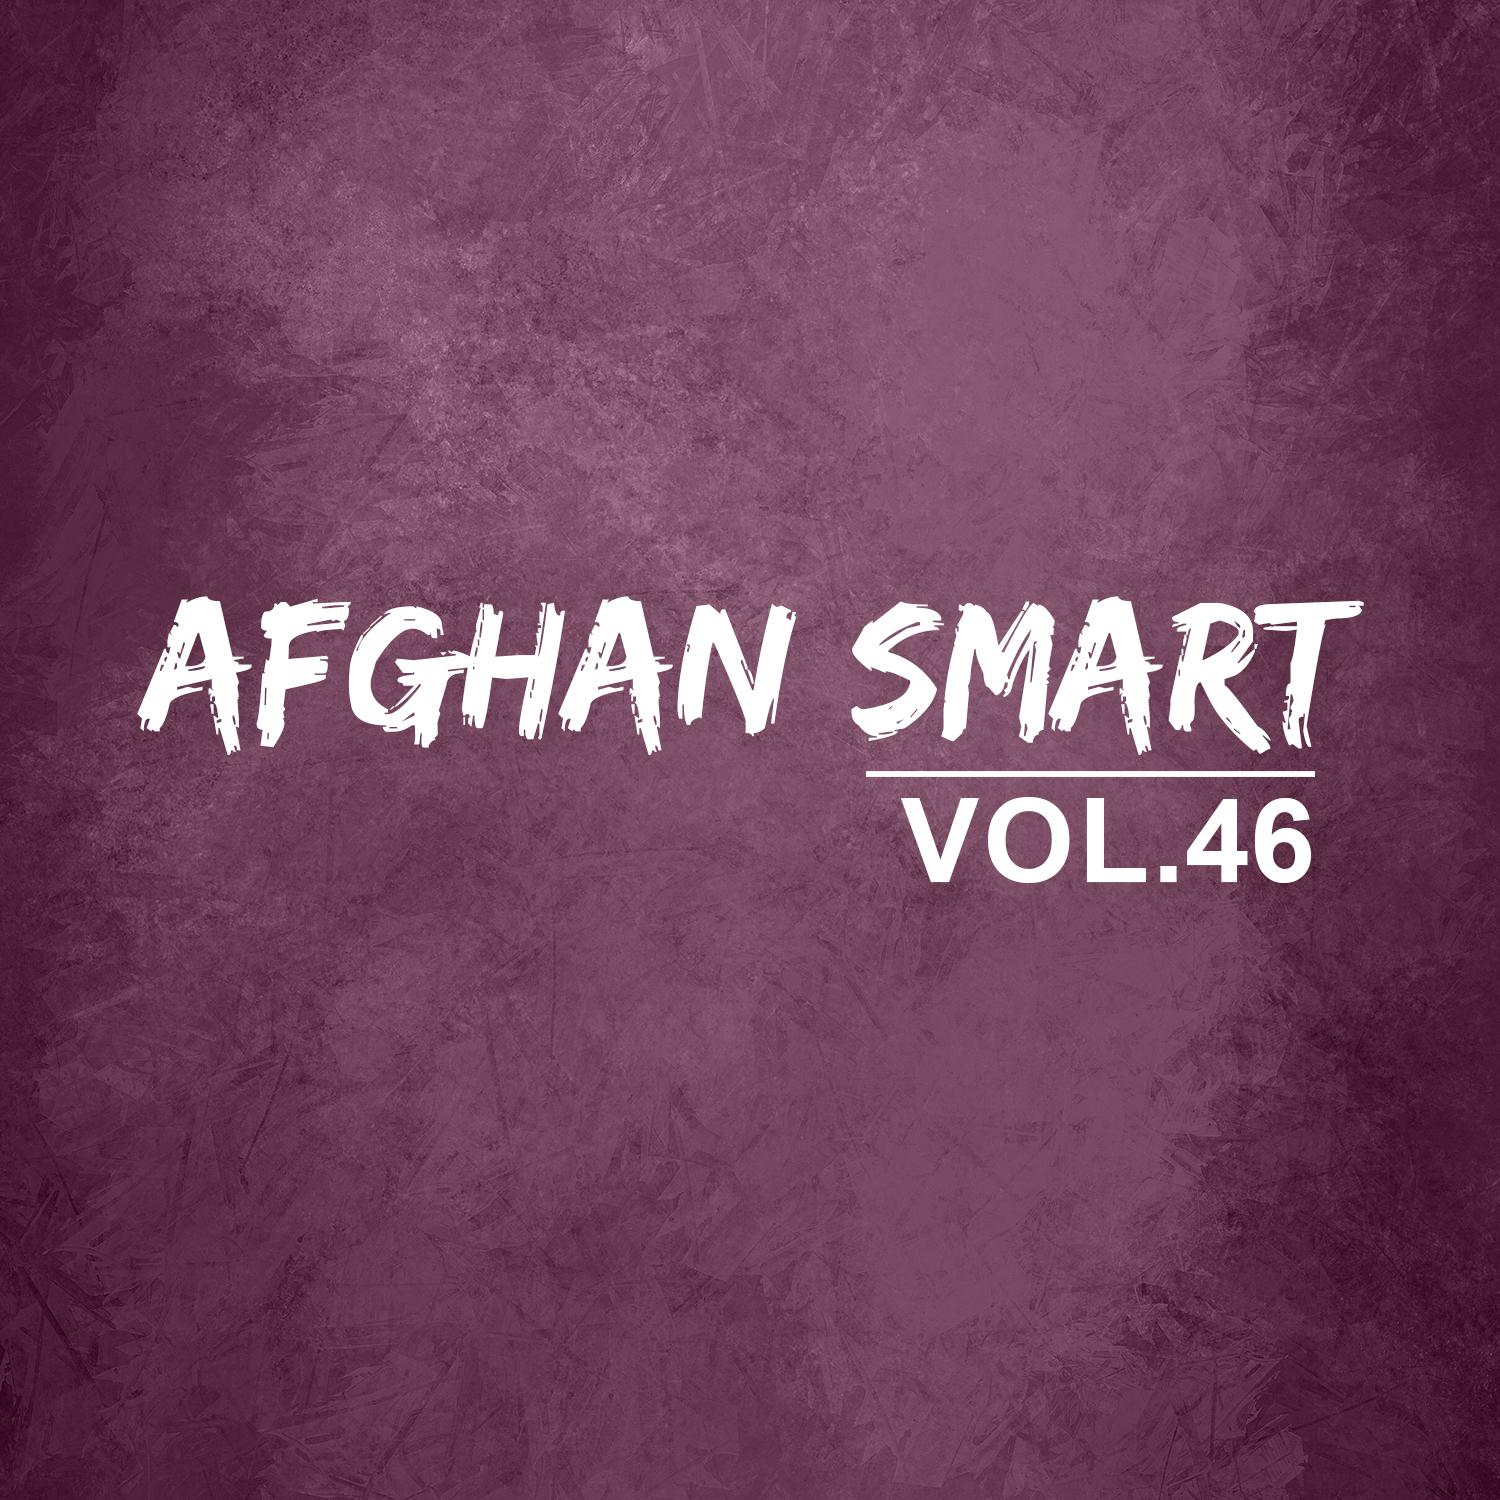 Afghan smart vol 46